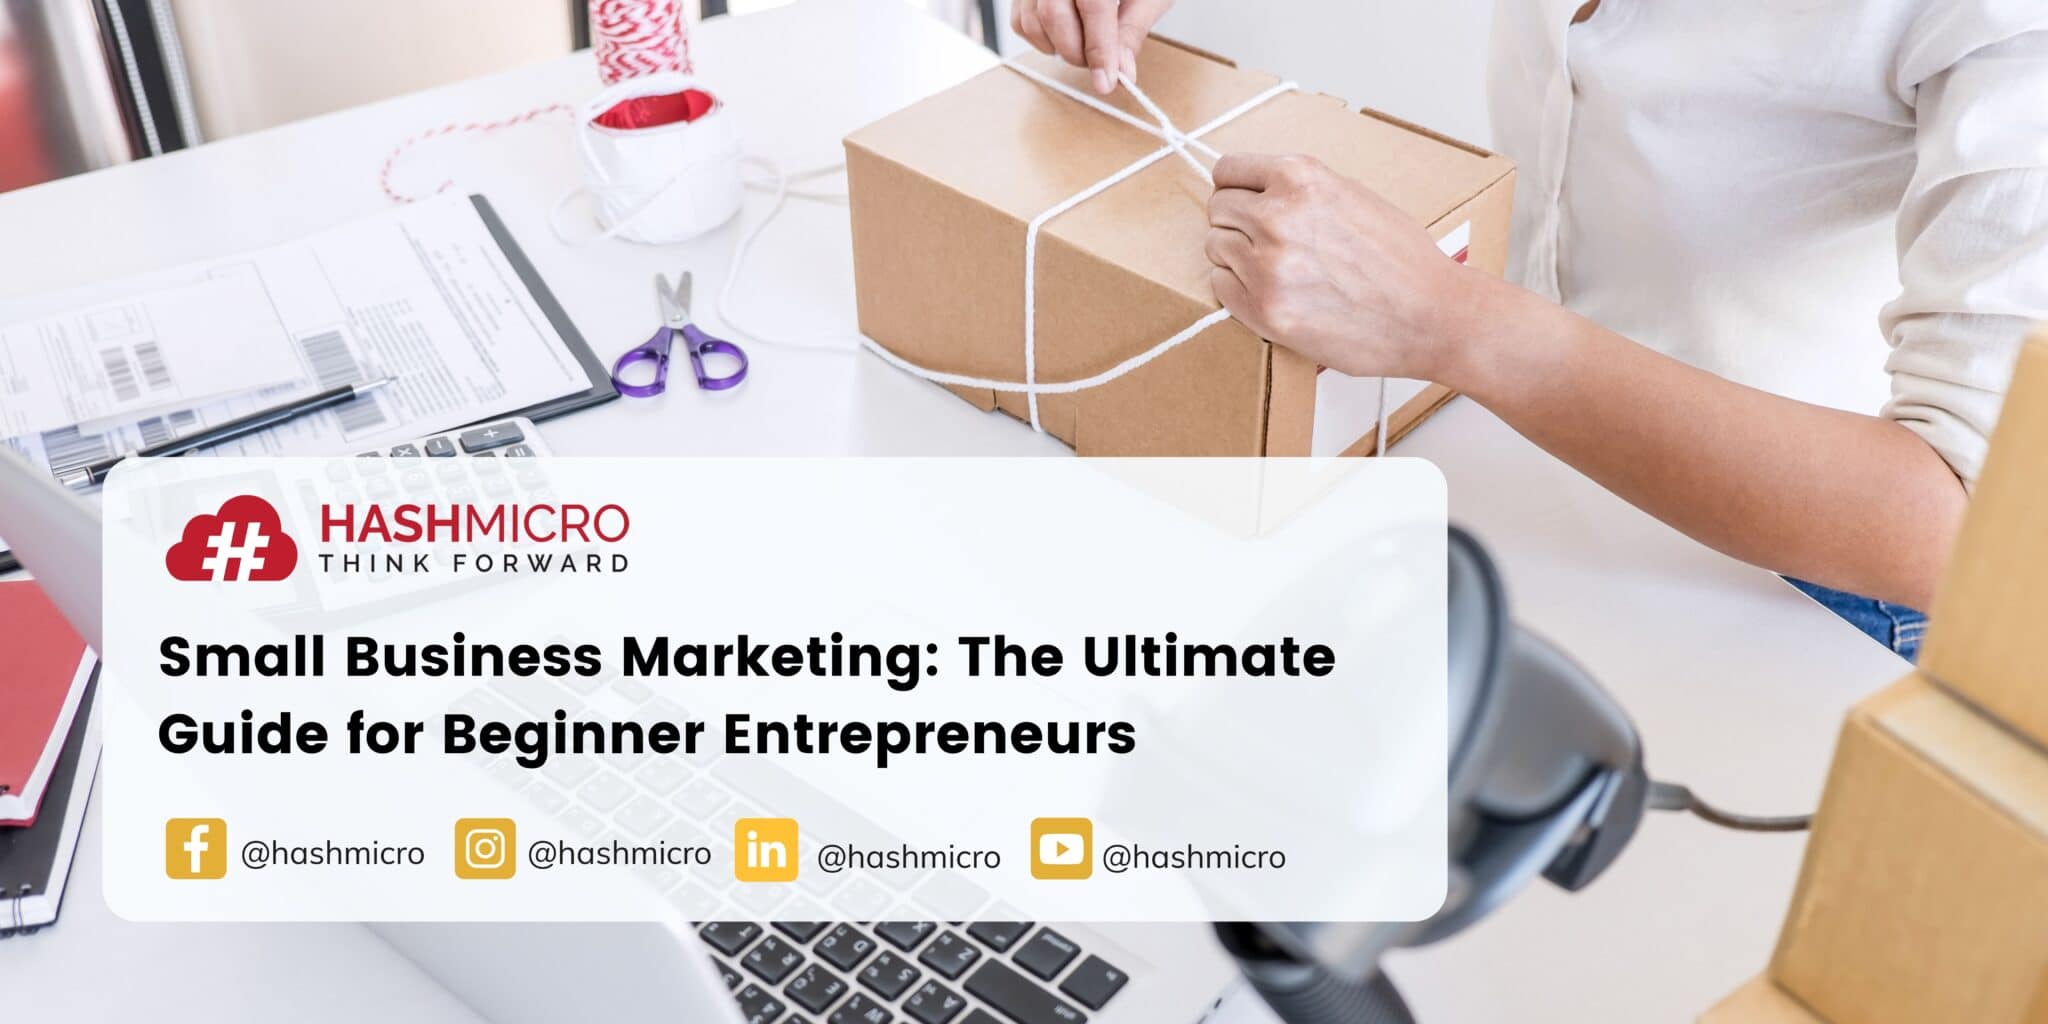 Small Business Marketing: The Guide for Beginner Entrepreneurs